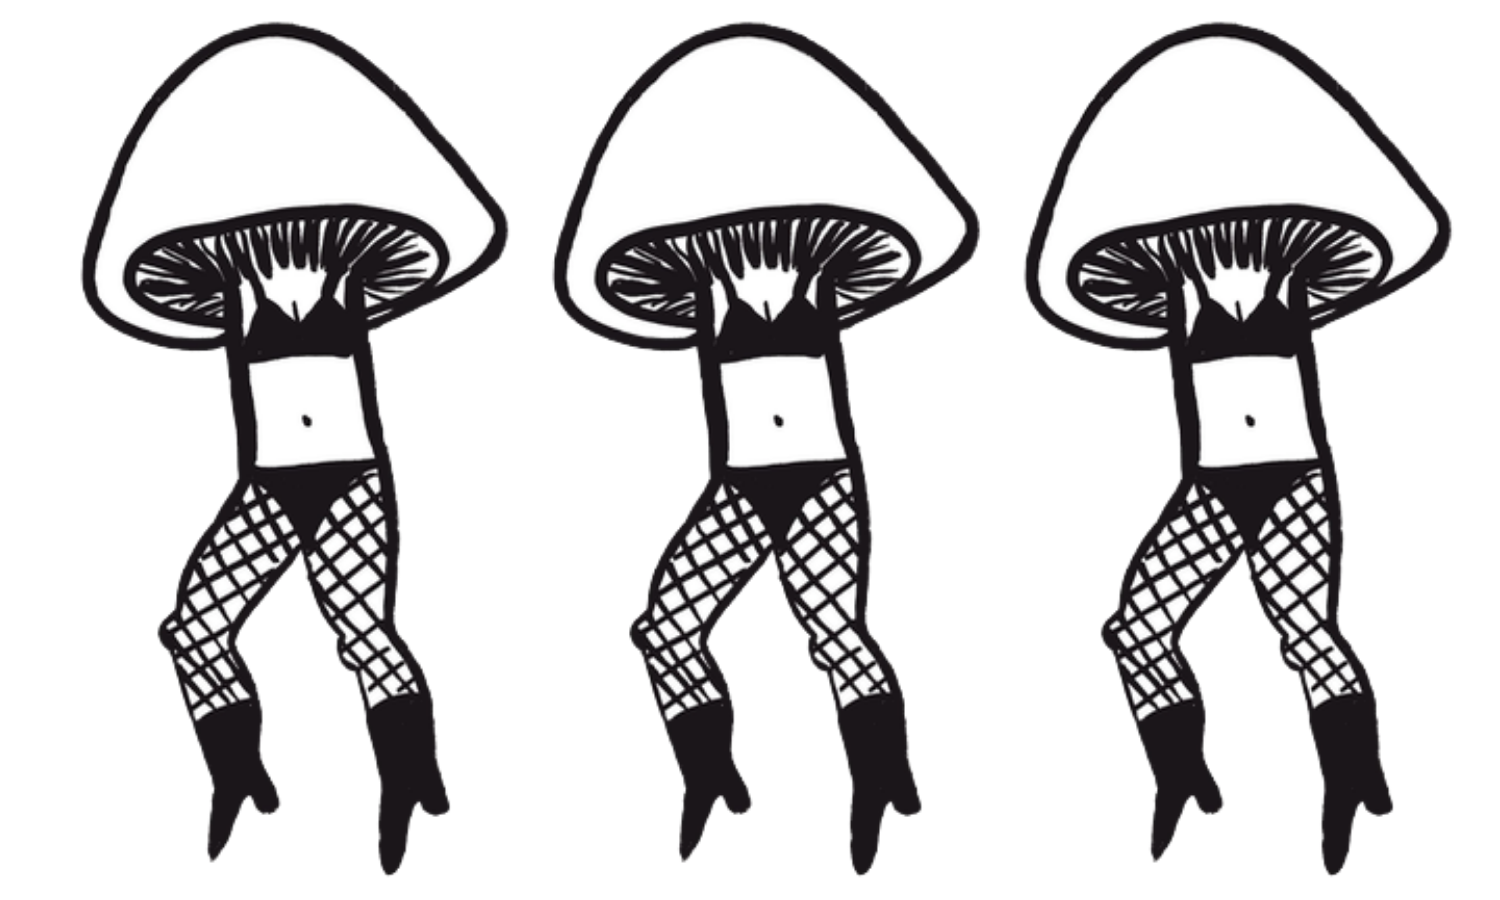 Fashion's Mushroom Moment